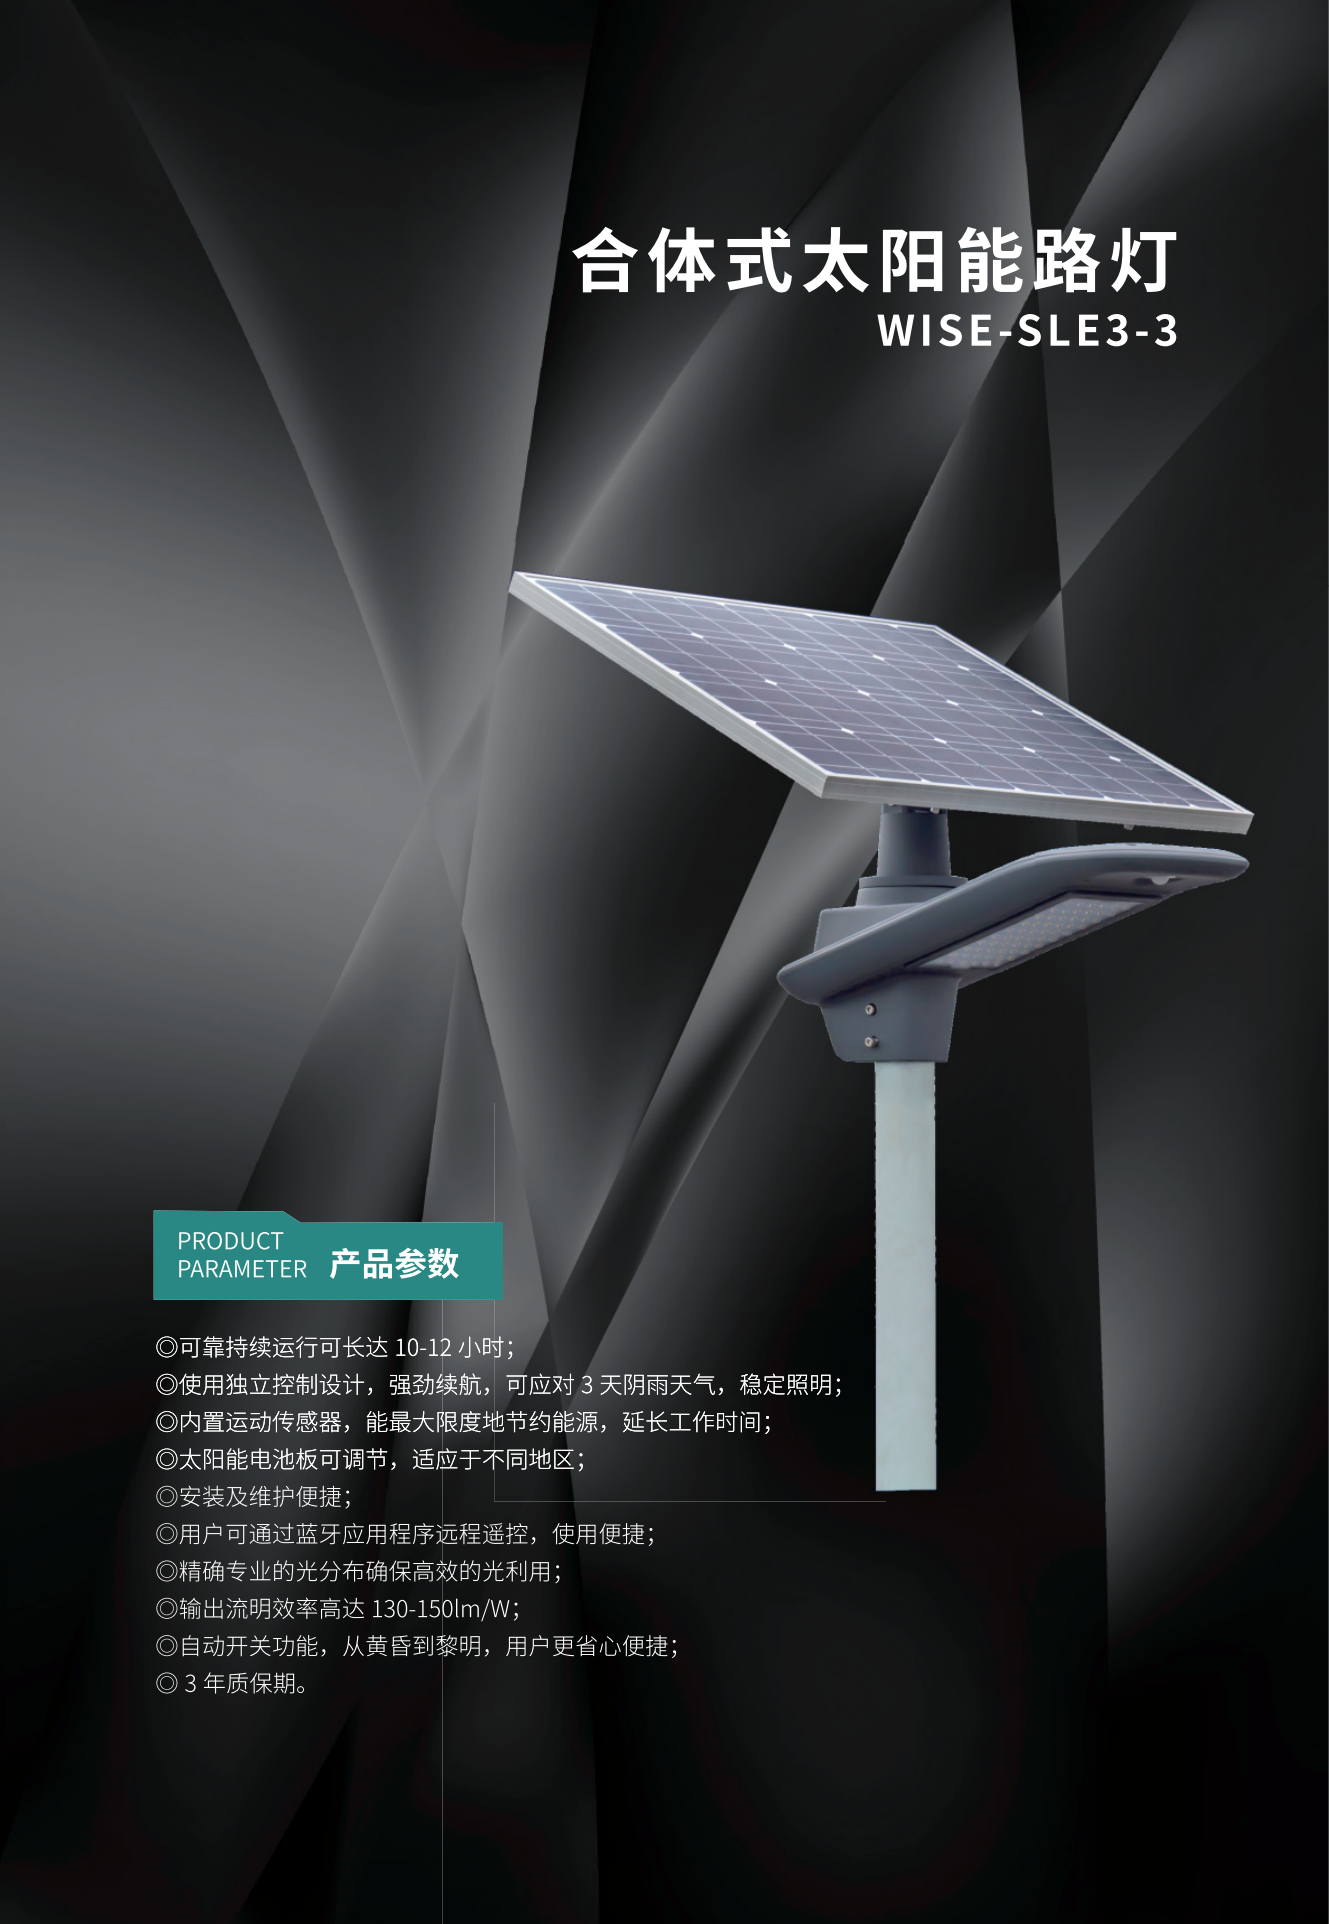 合体式太阳能路灯 WISE-SLE3-3